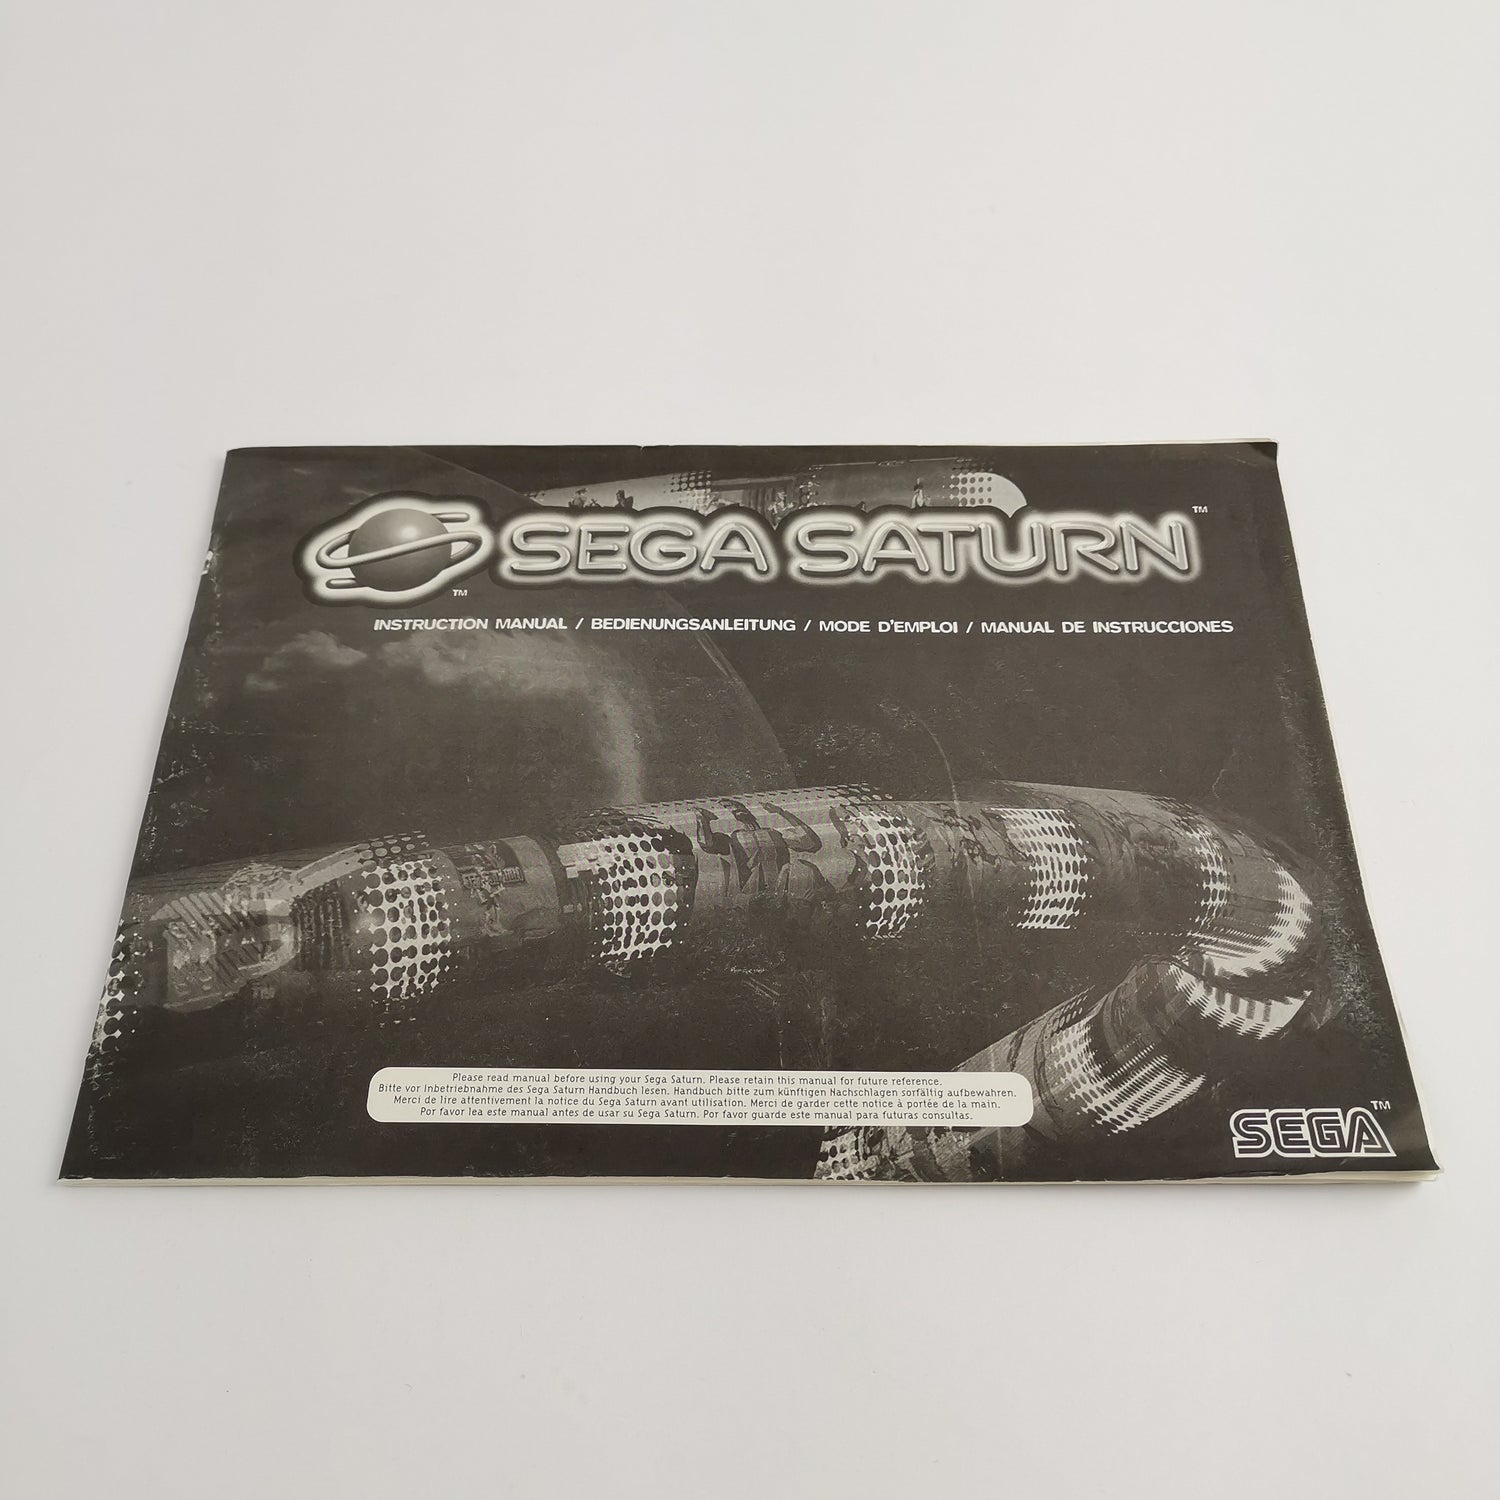 Sega Saturn Konsole mit 1 Controller, Kabel, Bootleg Sampler und Anleitung | PAL